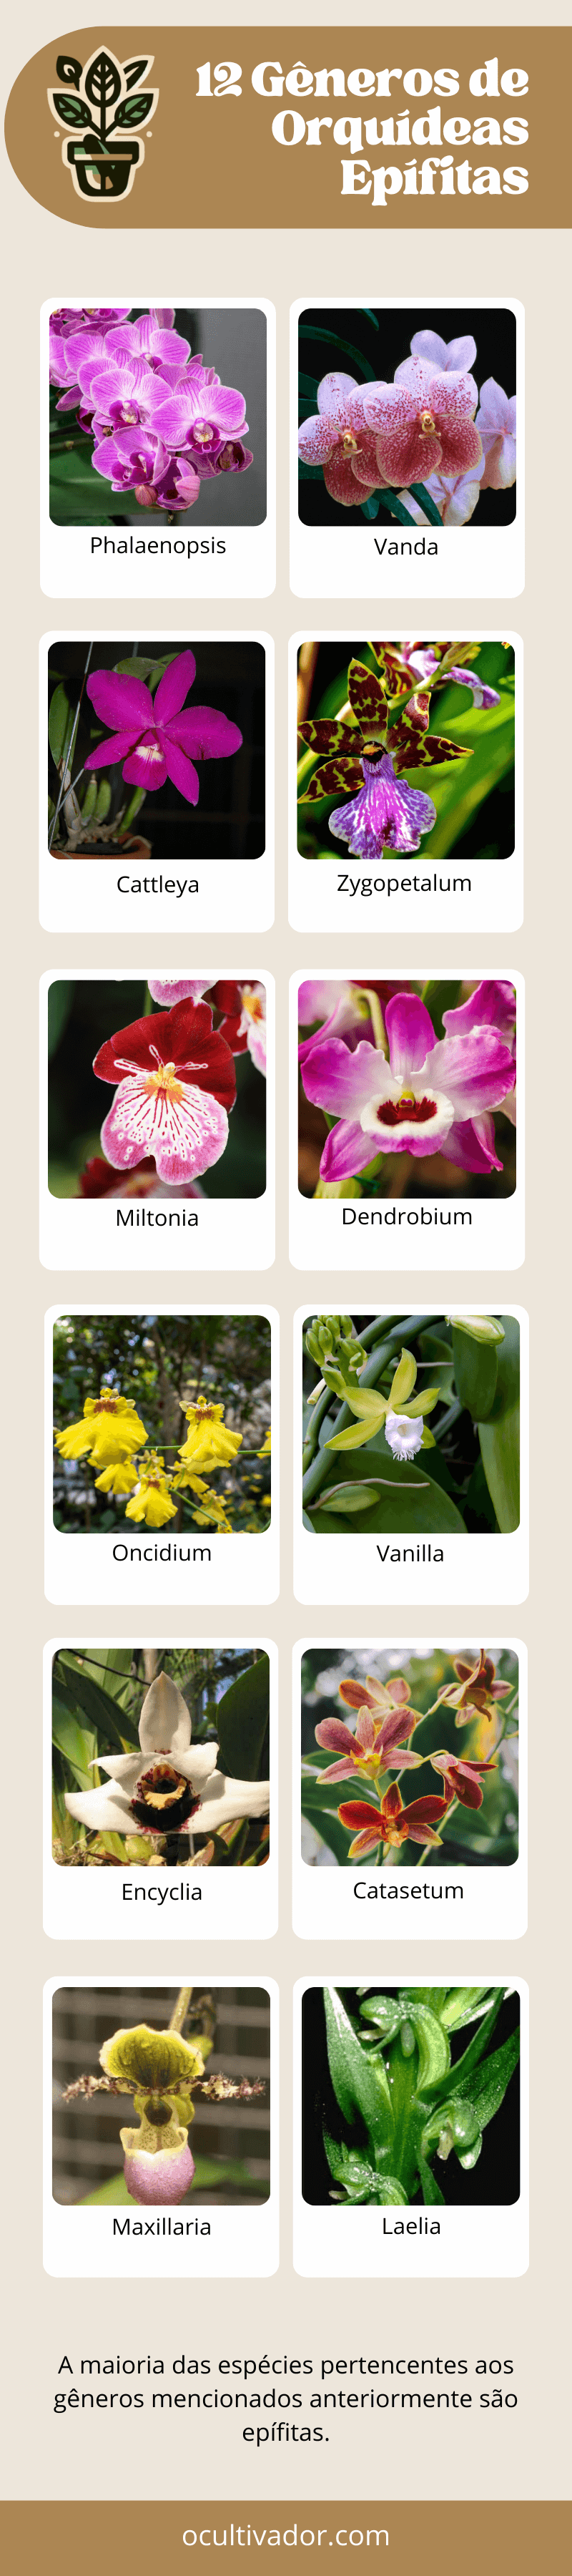 Infográfico - espécies de orquídeas epífitas